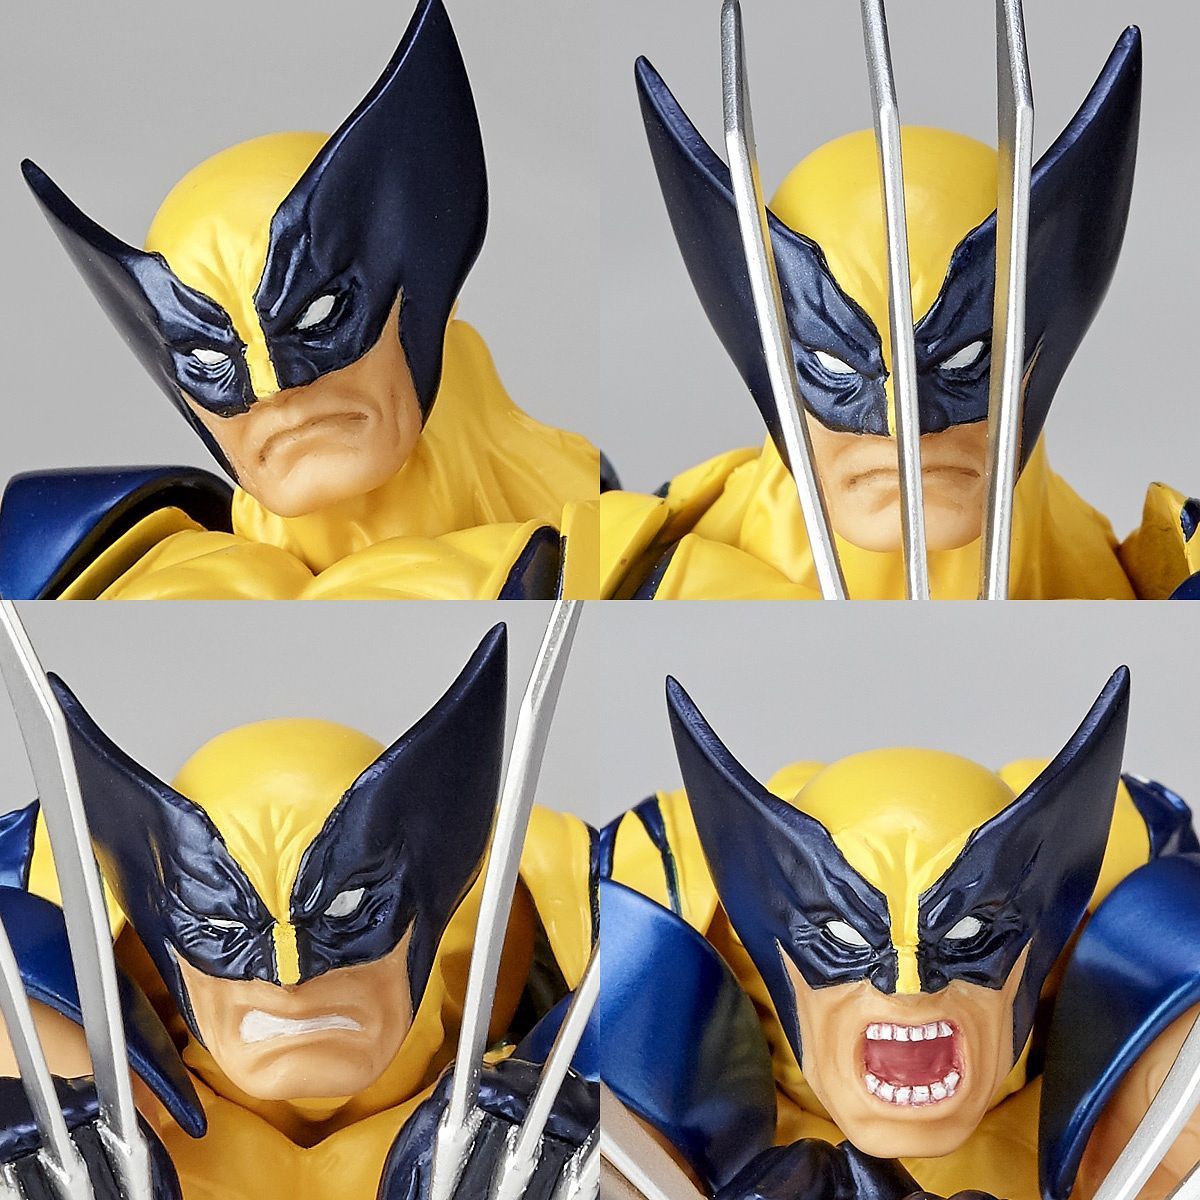 Kaiyodo Revoltech - Amazing Yamaguchi No.005 - Marvel's X-Men - Wolverine (Reissue) - Marvelous Toys